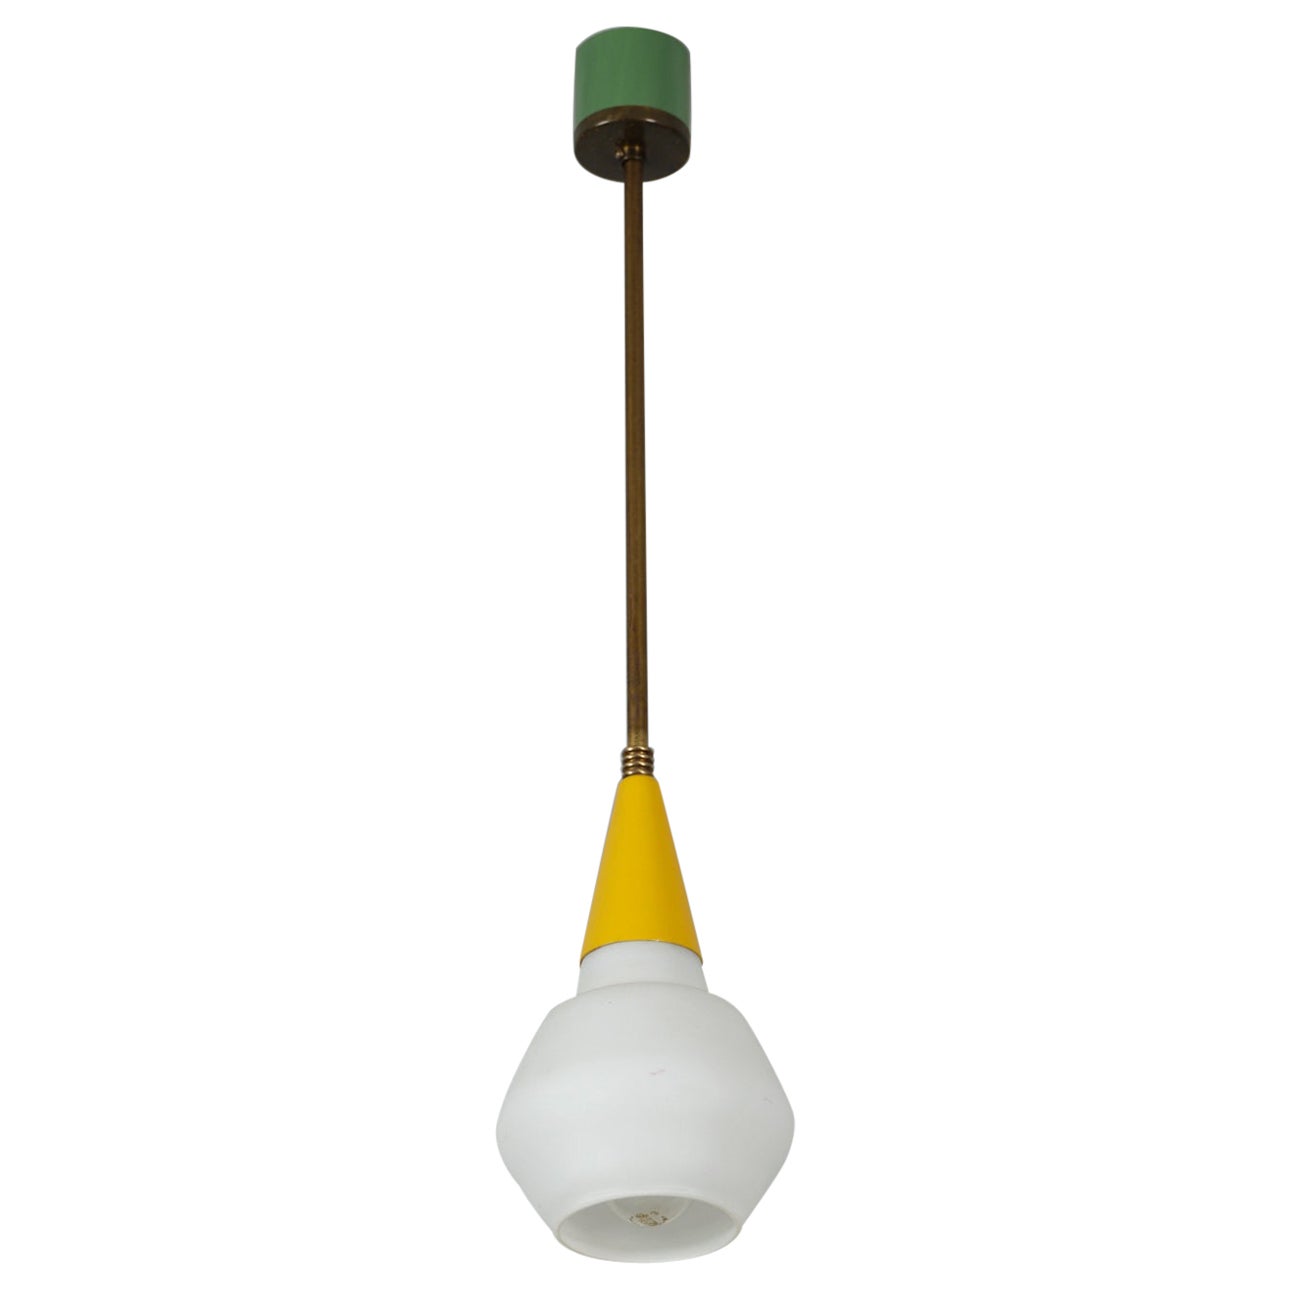 Italian Midcentury Brass Ceiling Pendant Light - Vintage 1950s Modern Design For Sale